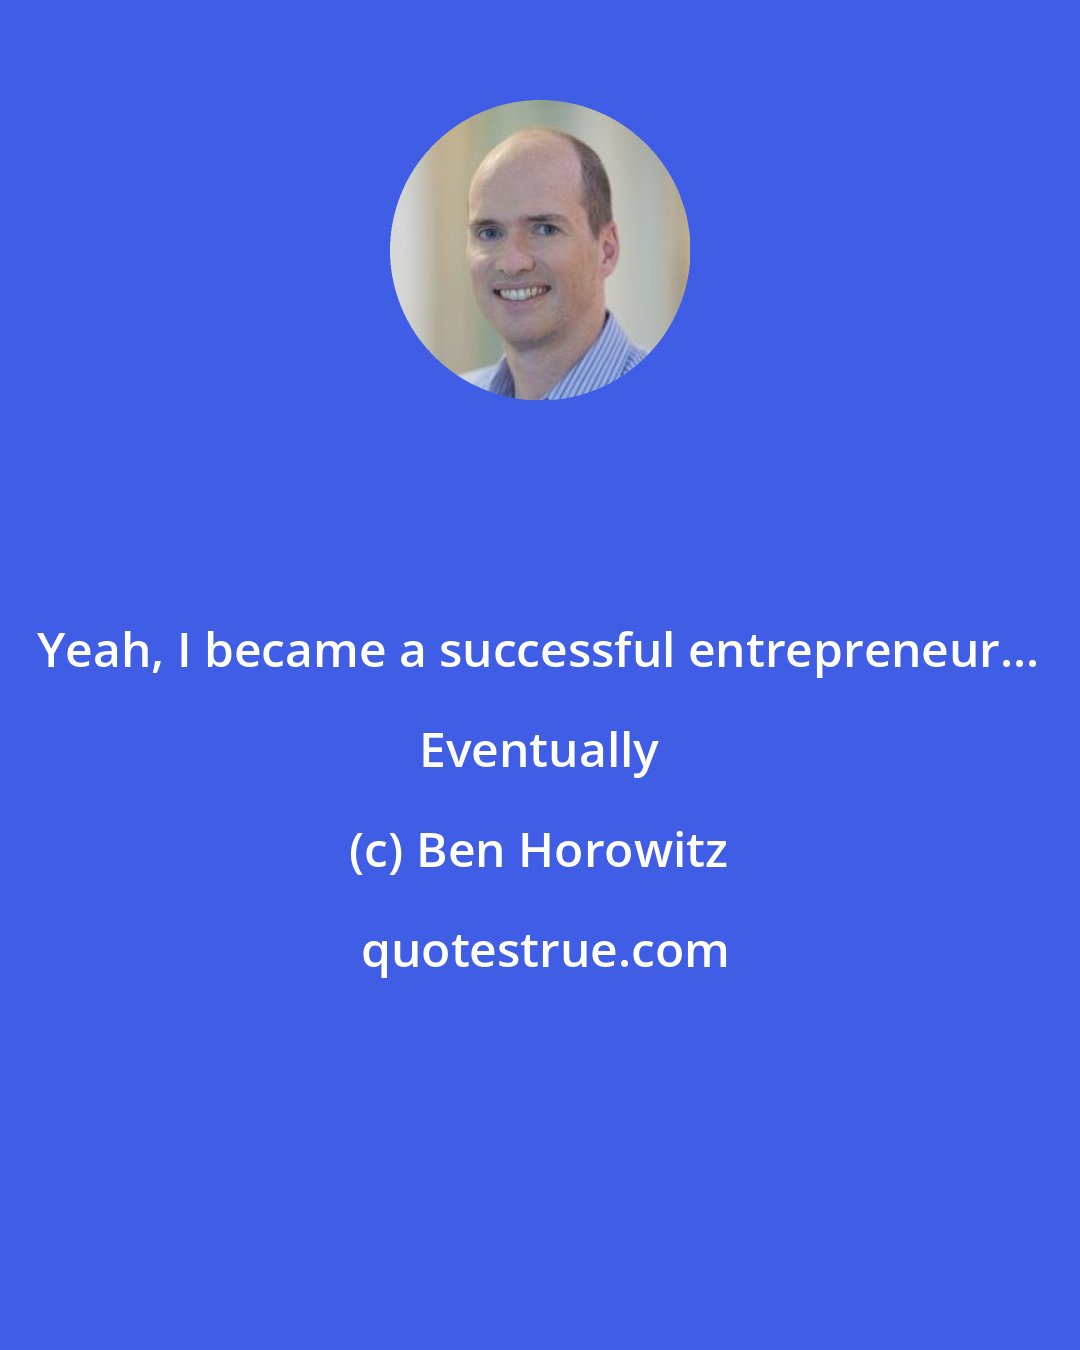 Ben Horowitz: Yeah, I became a successful entrepreneur... Eventually